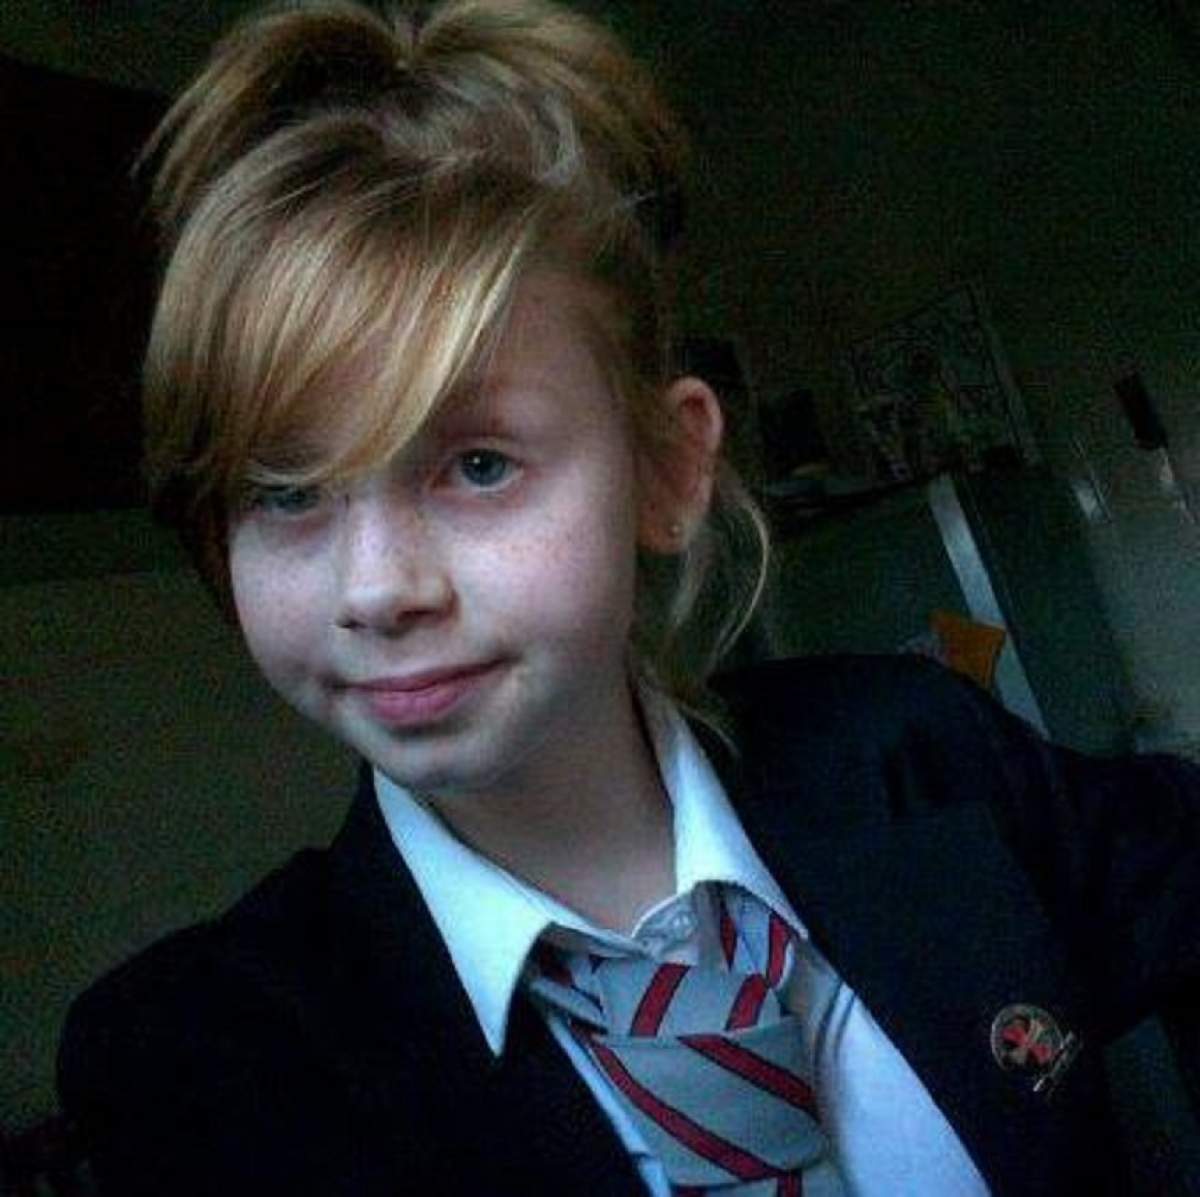 FOTO / O fată de 14 ani s-a spânzurat. Motivul sinuciderii l-a scris în jurnal. "Am vrut să uit totul"